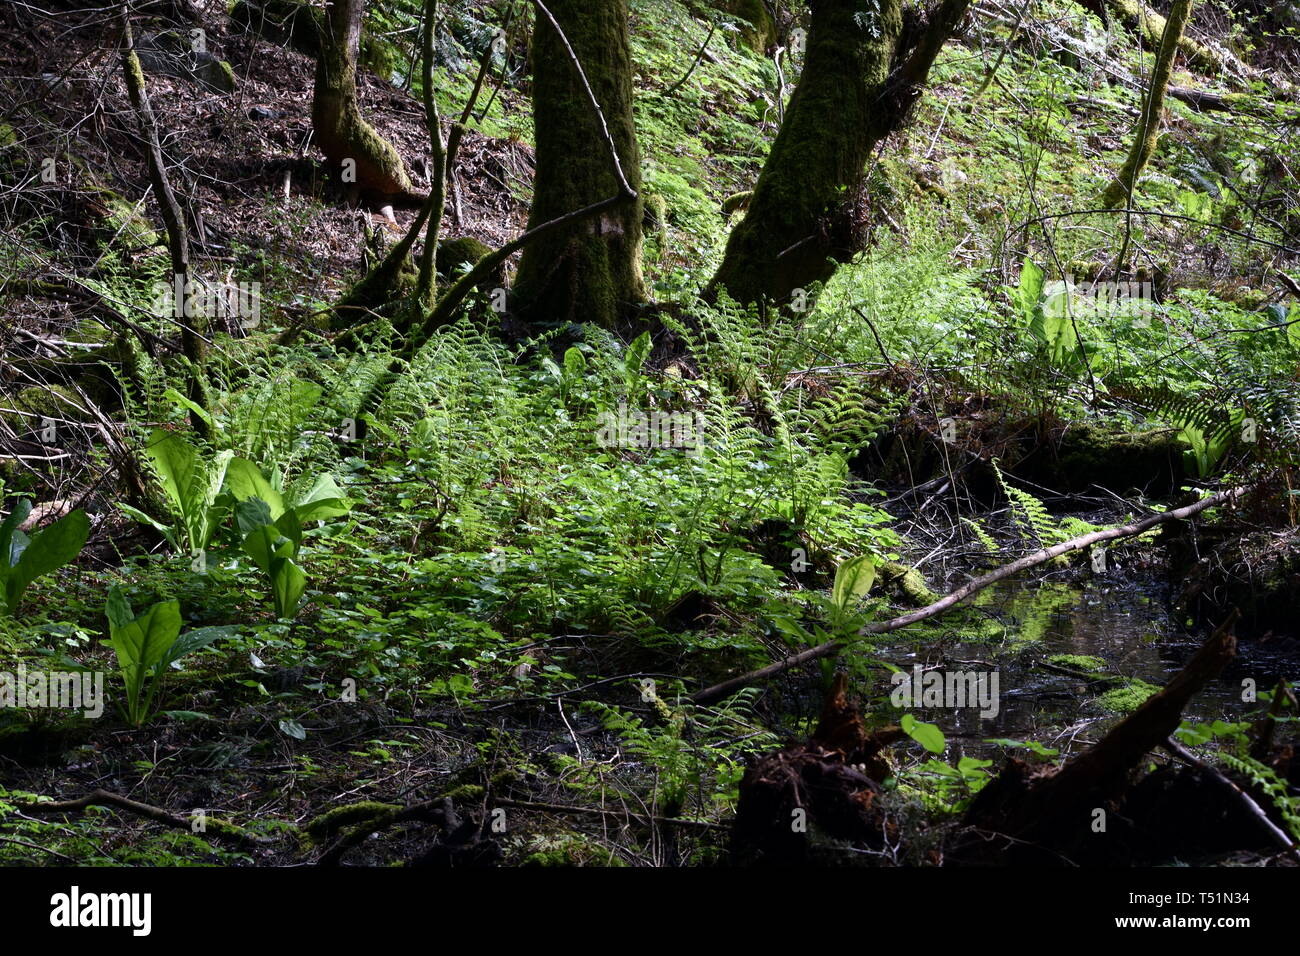 Photographie de la luxuriante verdure trouvé dans une forêt tropicale de Squamish, BC Canada. Une forêt urbaine rare avec des verdures de fougères, de mousses et de vieux arbres. Banque D'Images